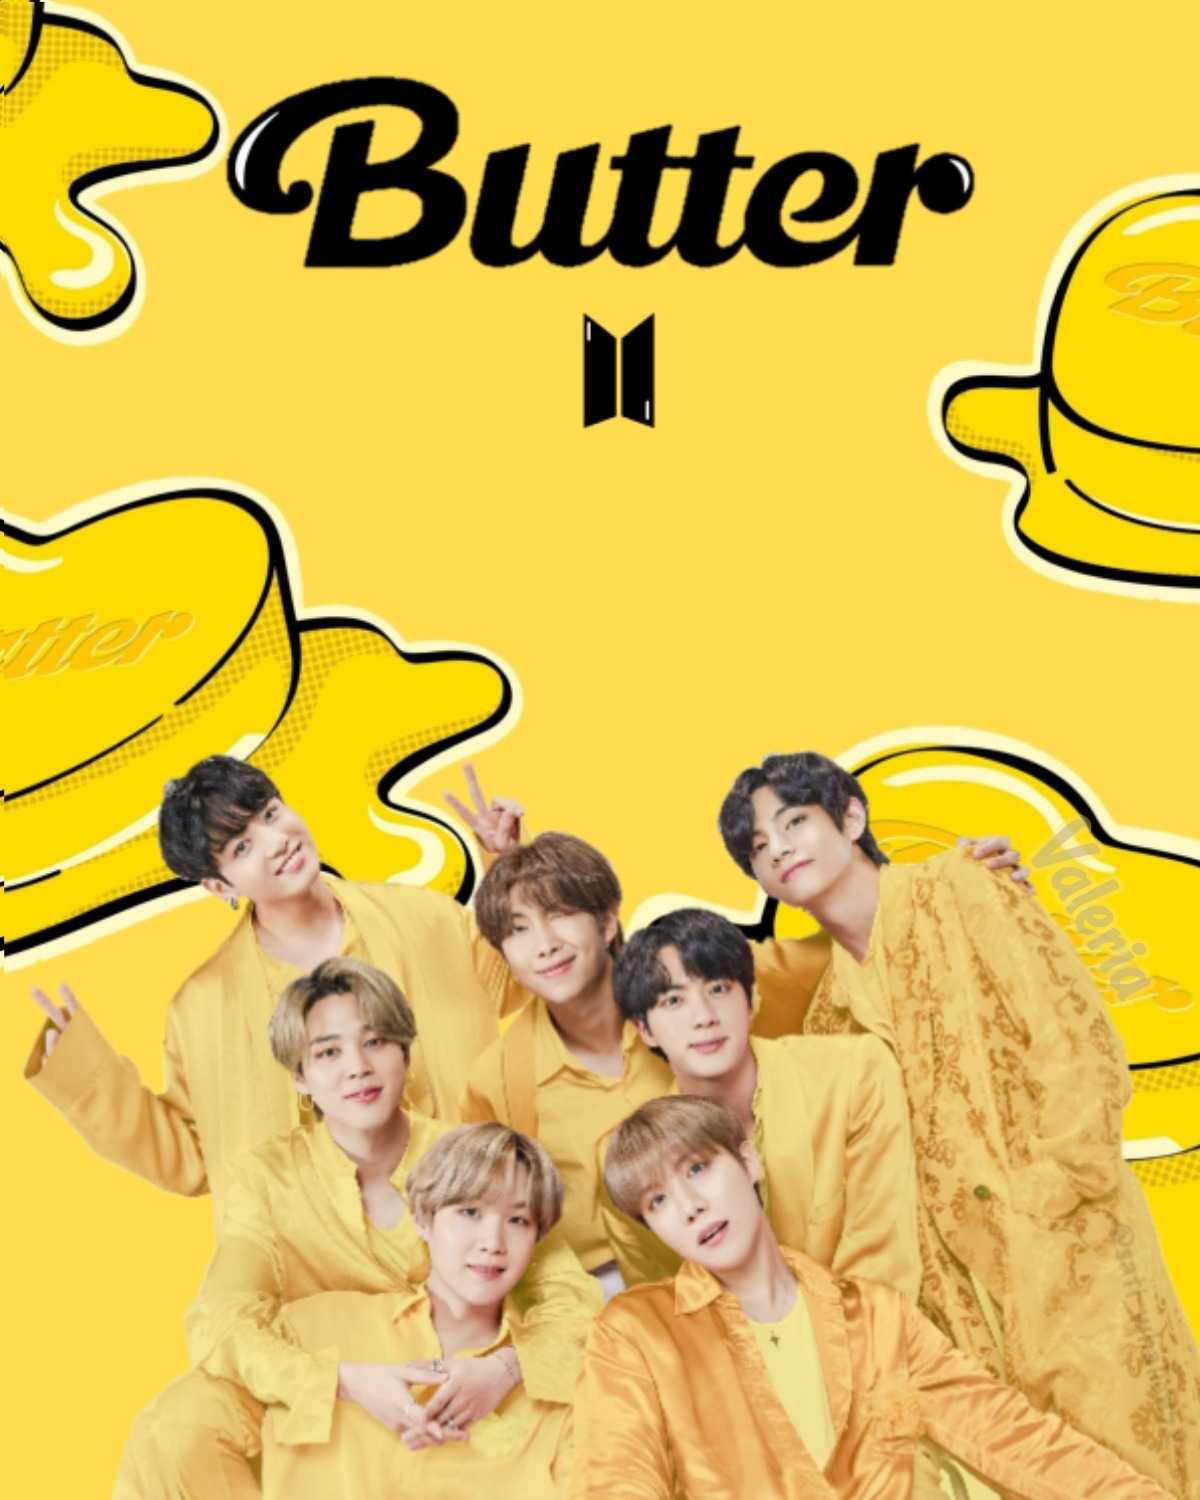 Bts butter mv HD wallpapers  Pxfuel